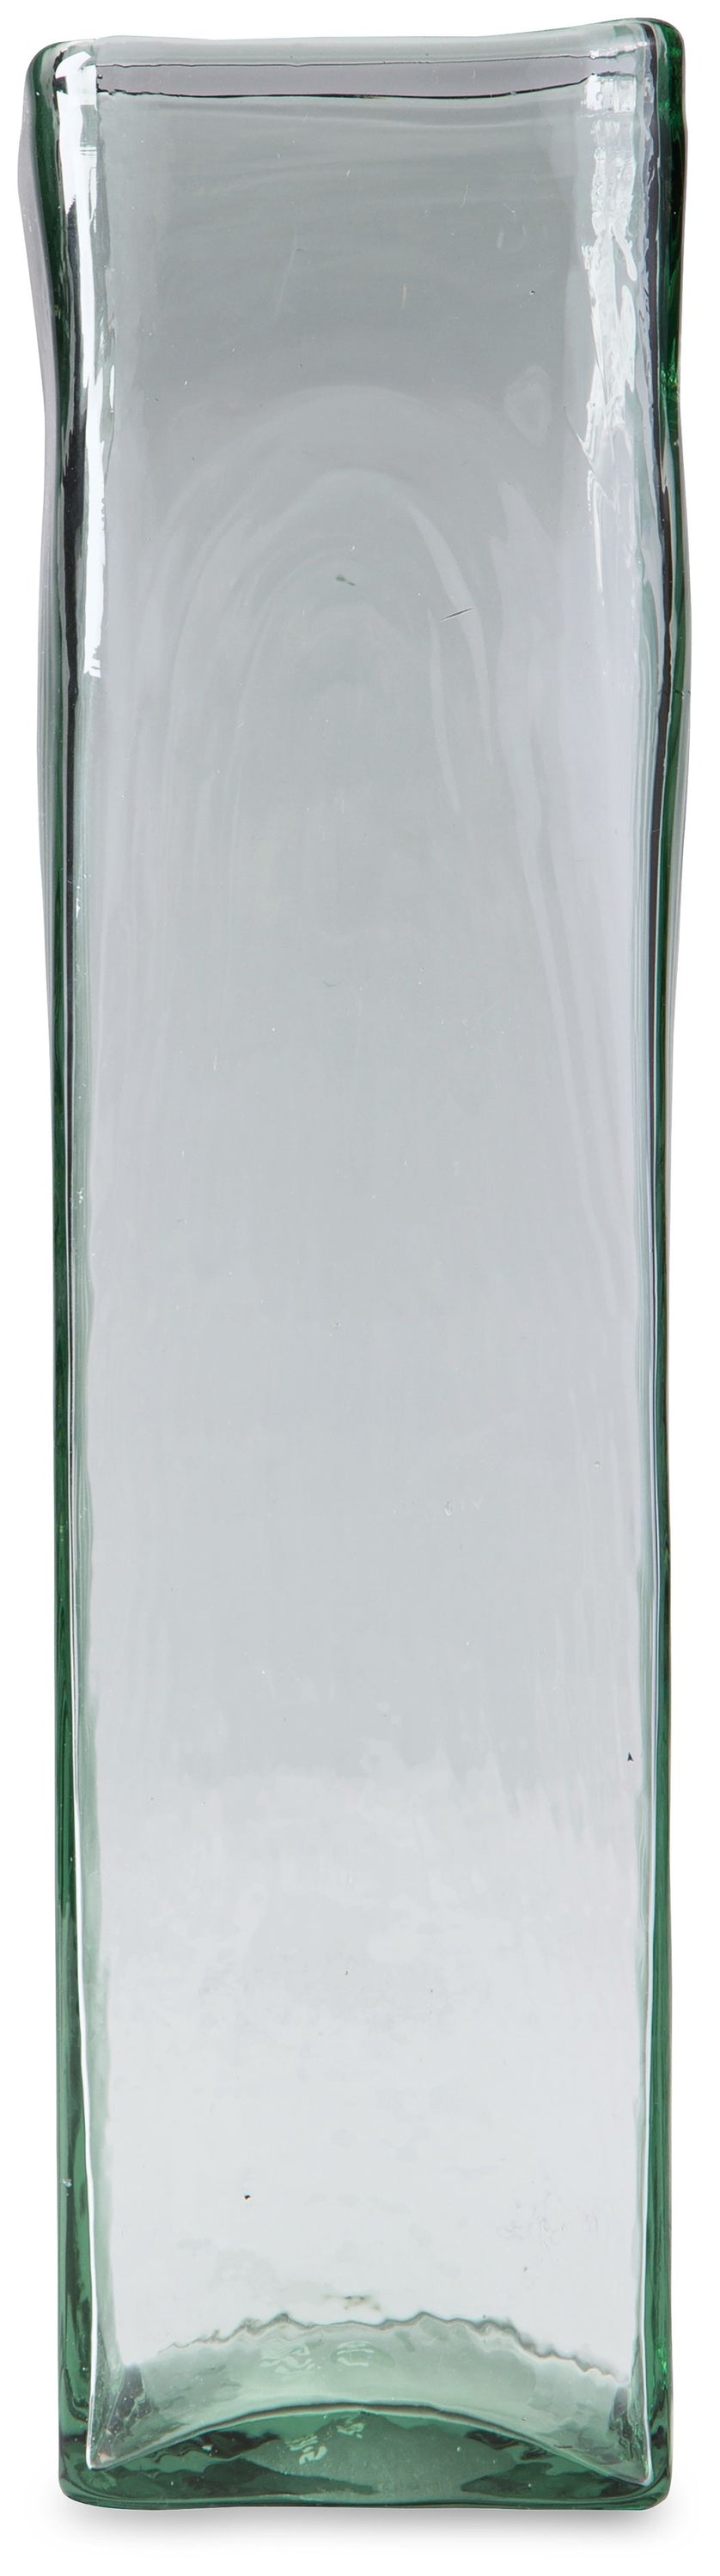 Taylow - Green - Vase - Large